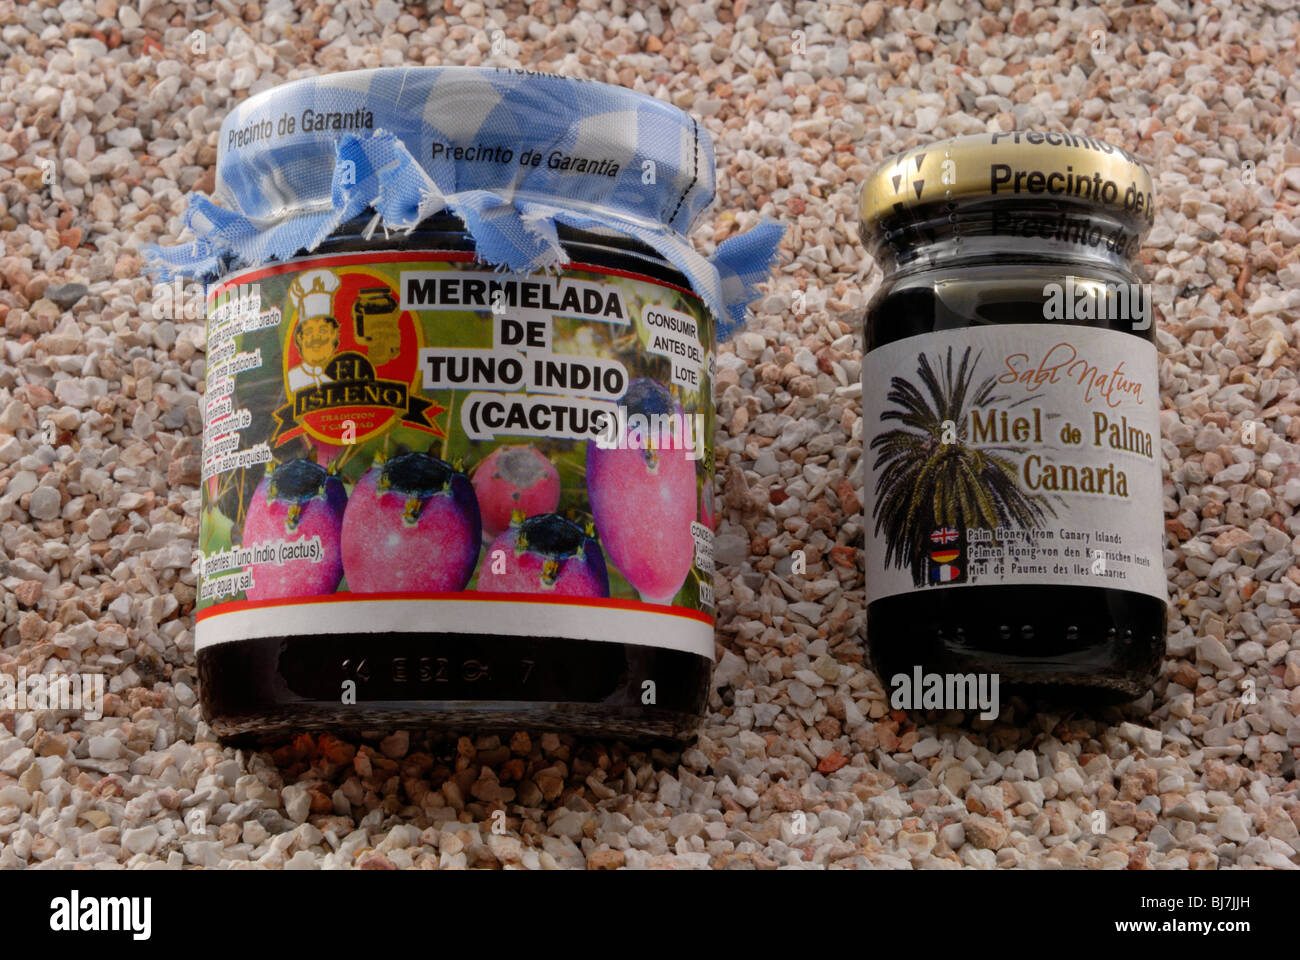 Ein Glas mit Marmelada de Tuno Indio, Kaktus-Marmelade und ein Glas Miel de Palma Canarias, Palmenhonig von Kanarischen Inseln, Barranco Stockfoto